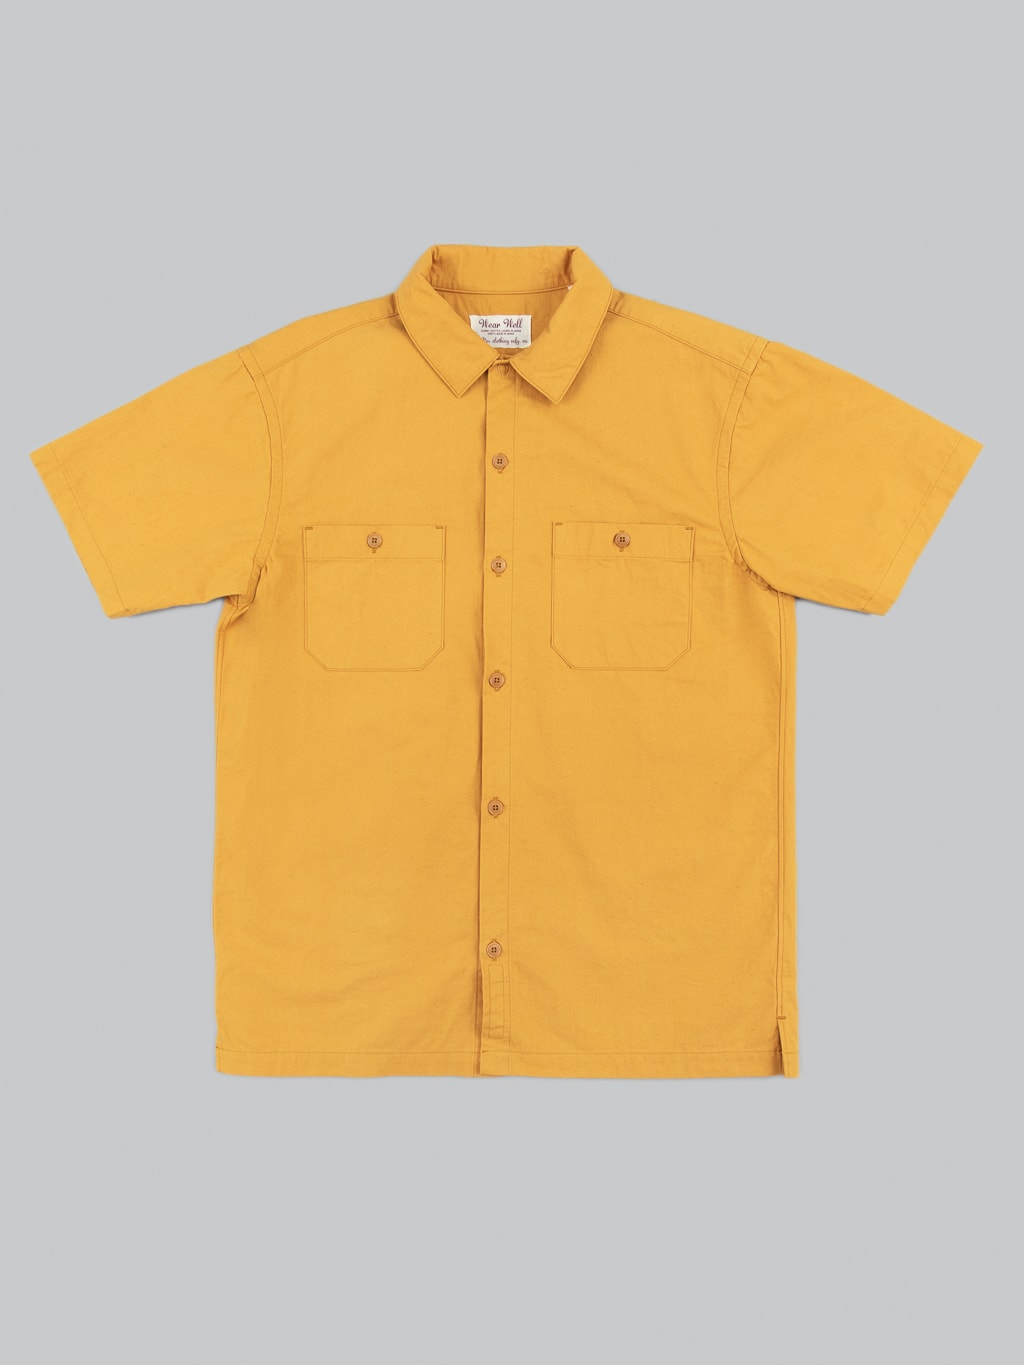 ues denim mechanic shirt sleeves shirt pumpkin yellow front